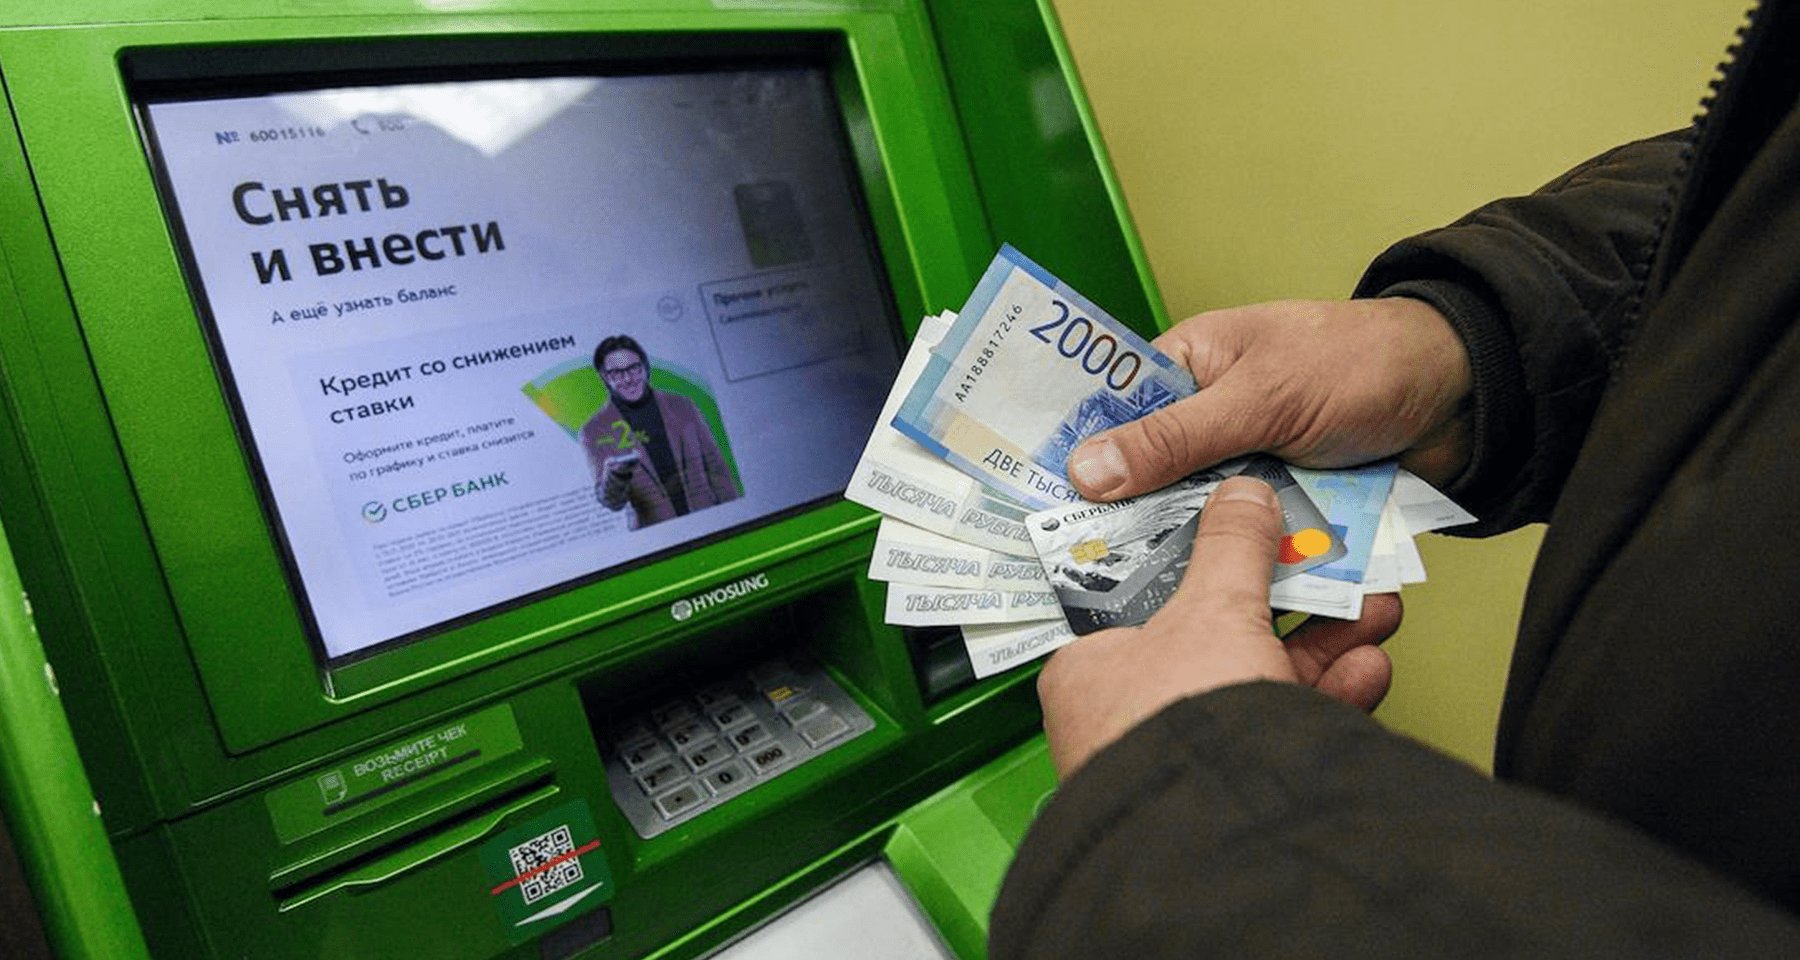 Лимит снятия наличных с карты Сбербанка: сколько можно снять через  банкомат, ограничения по сумме снятия денег | Банки.ру